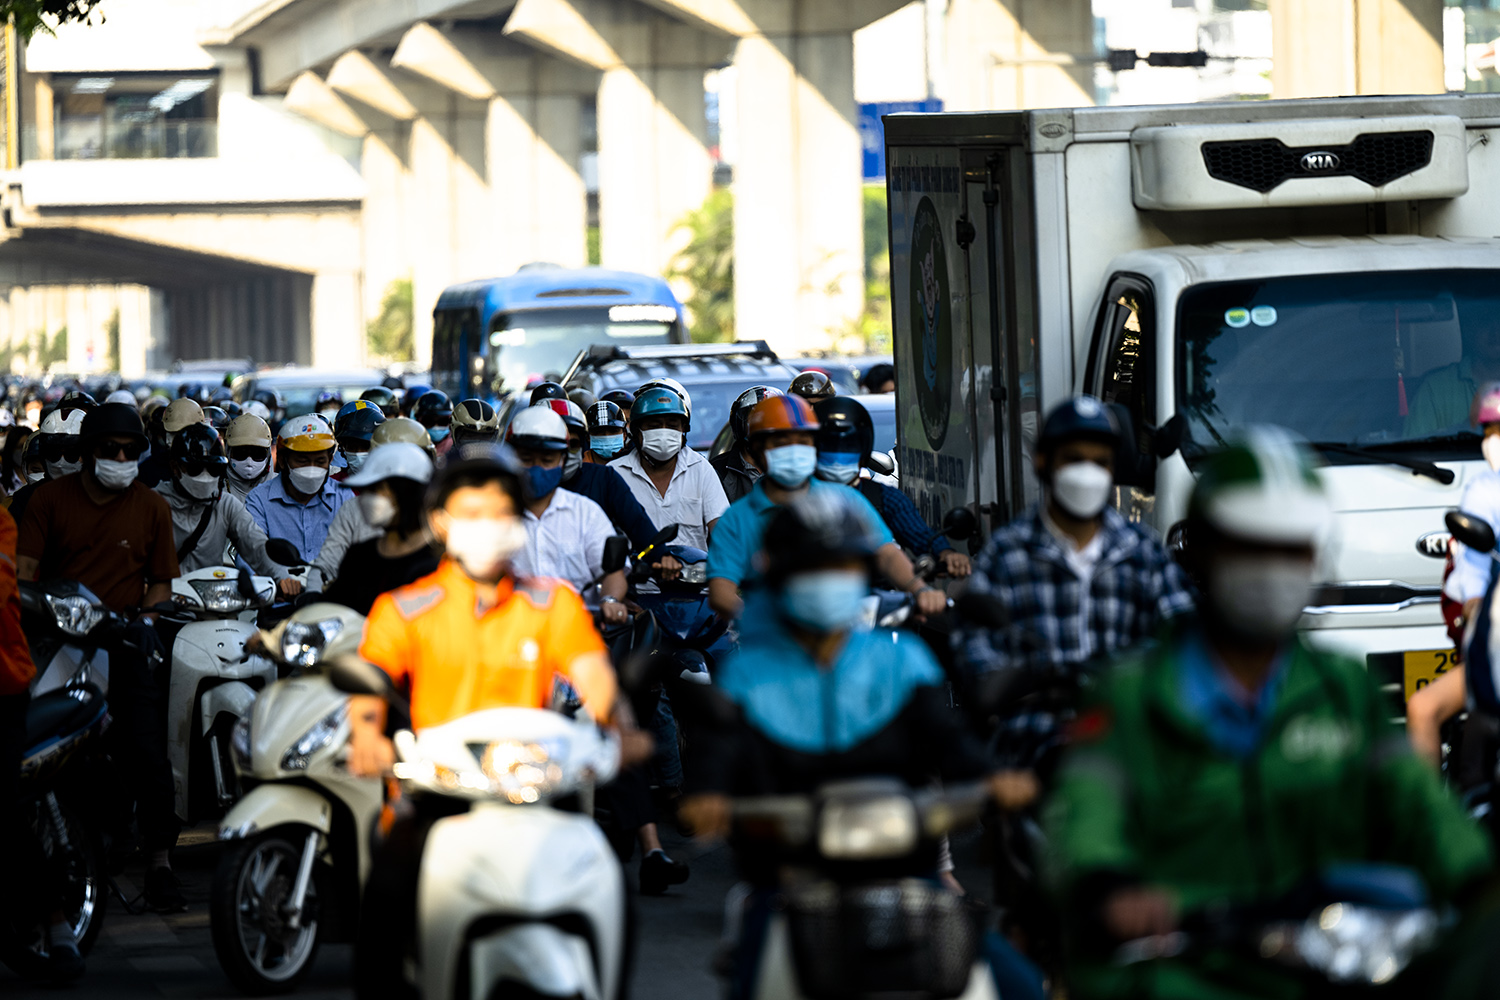 Hà Nội, TP.HCM lại tắc đường kinh hoàng sau nghỉ lễ, người dân chật vật tới nơi làm việc - 7